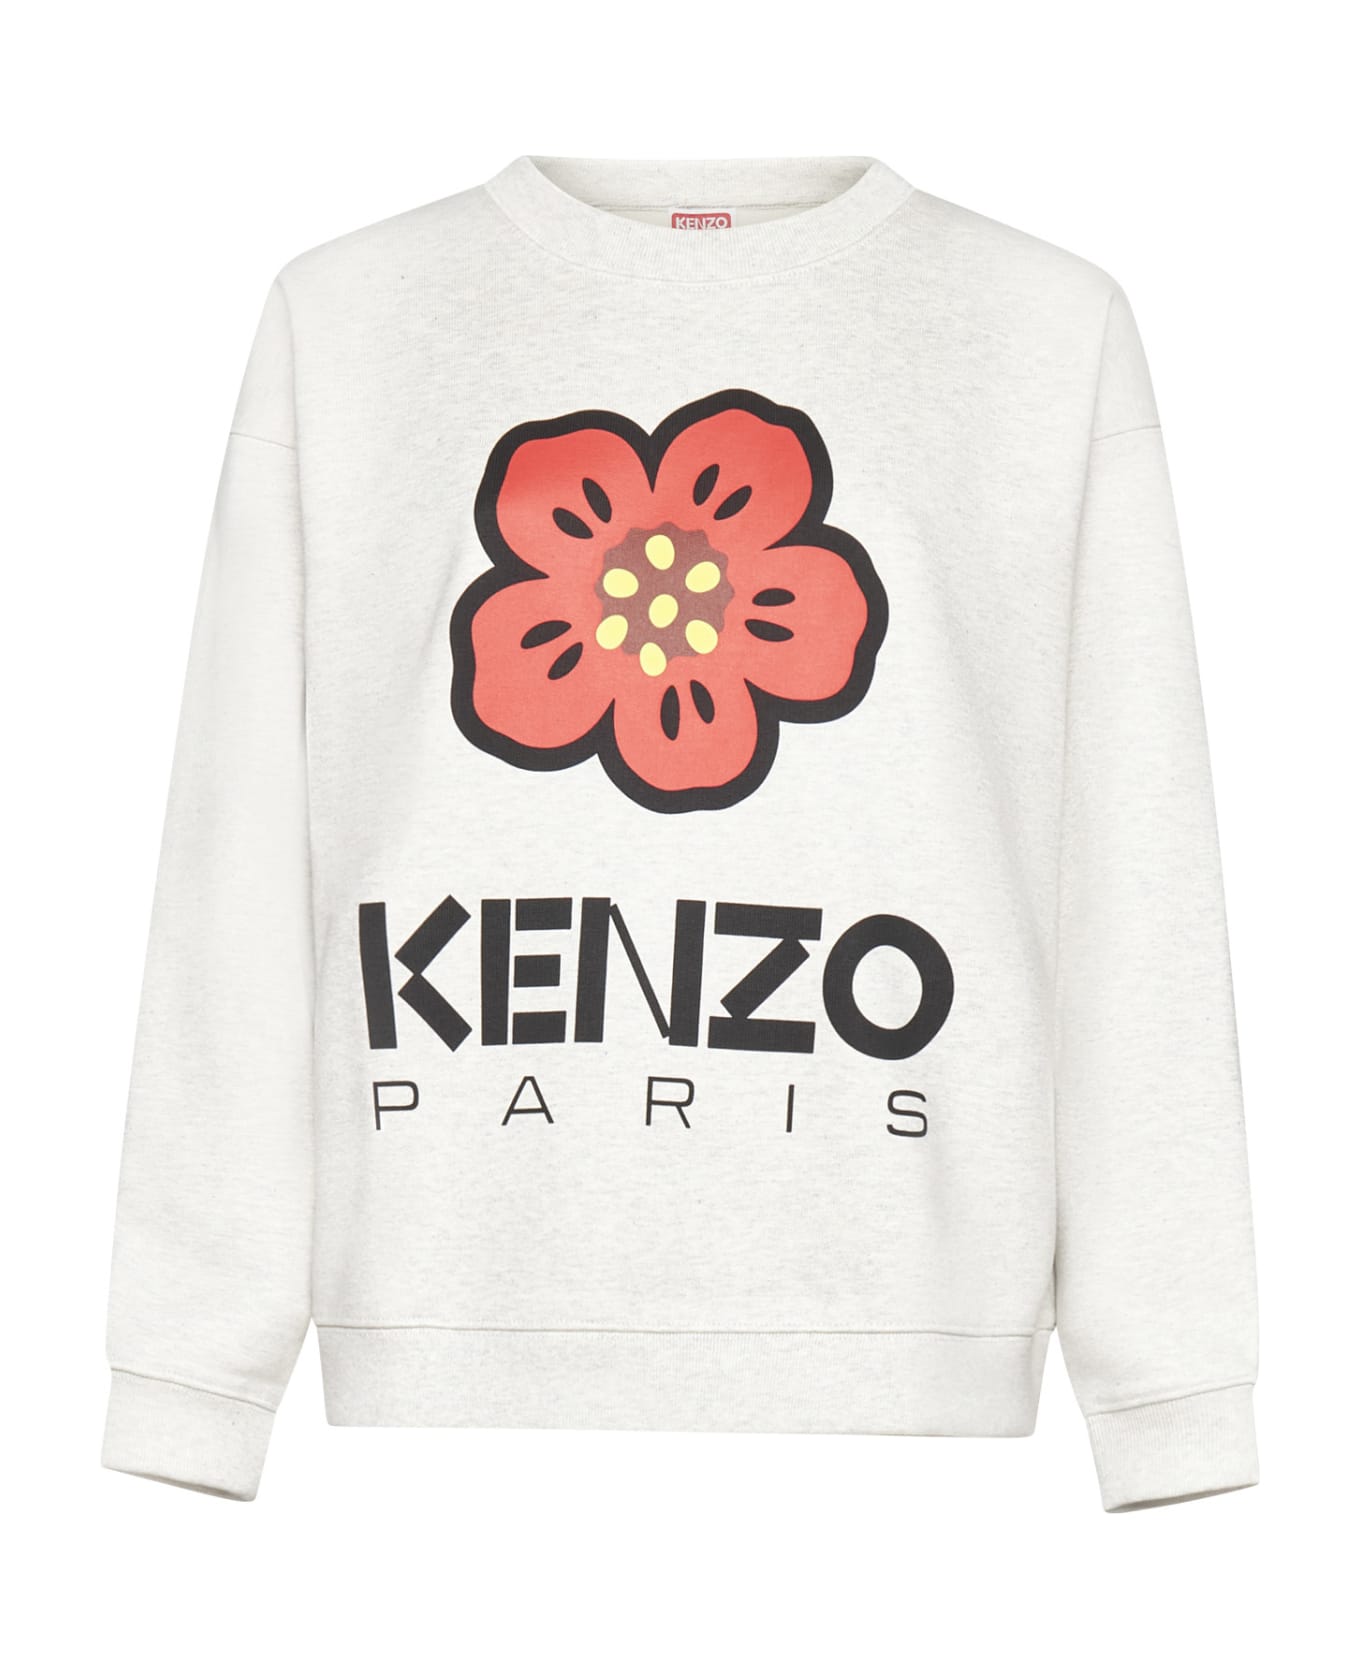 Kenzo Boke Flower Sweatshirt - Grey